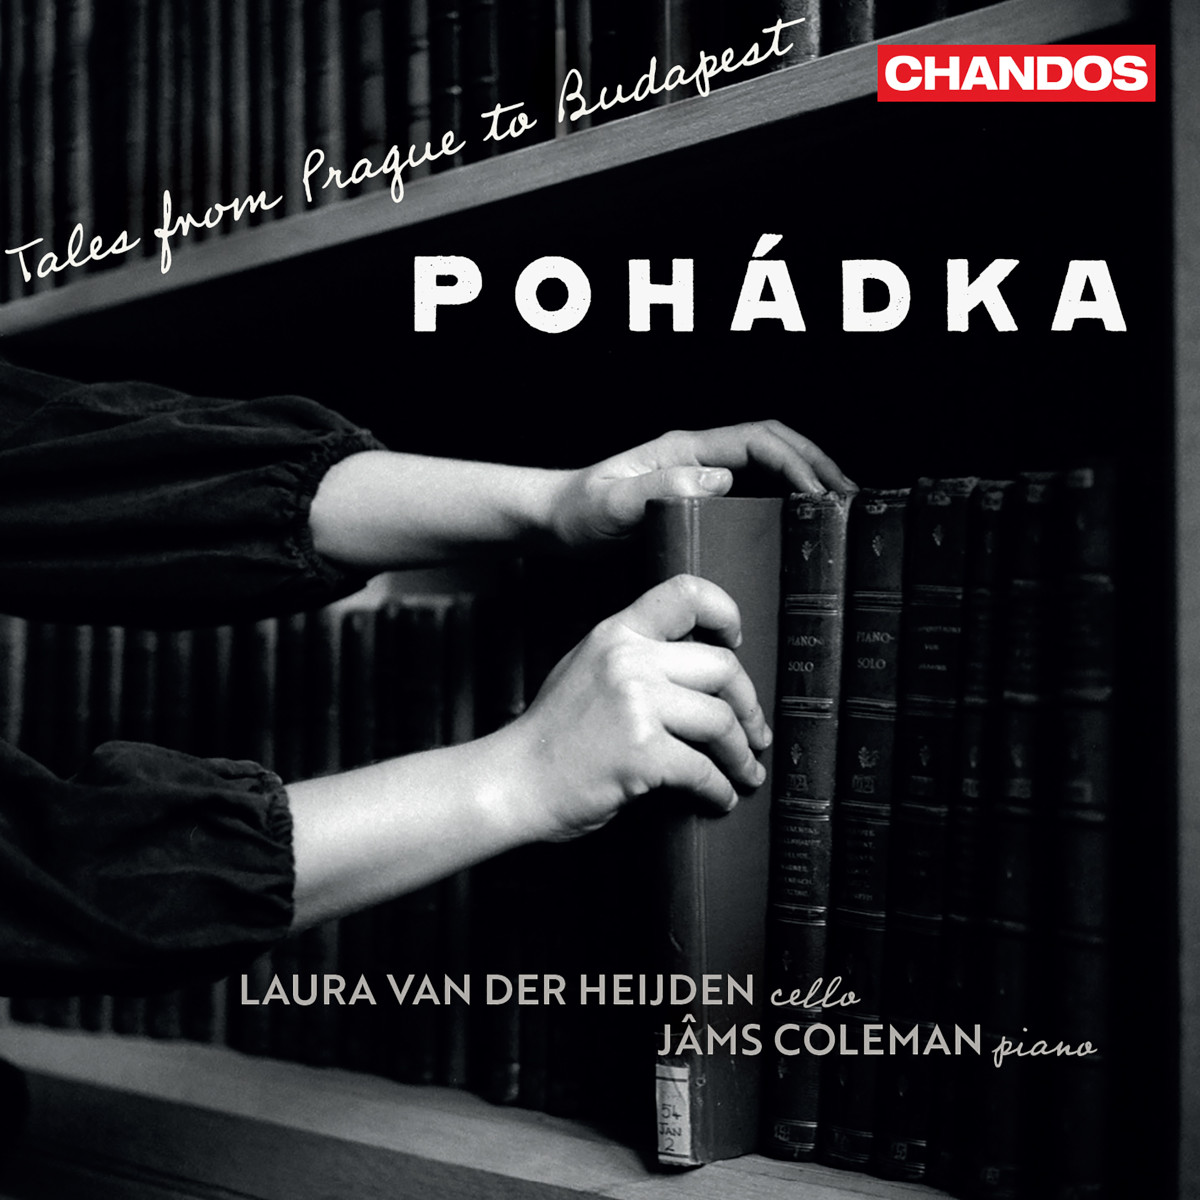 CD: Pohádka - Tales from Prague to Budapest (zdroj Chandos Records)